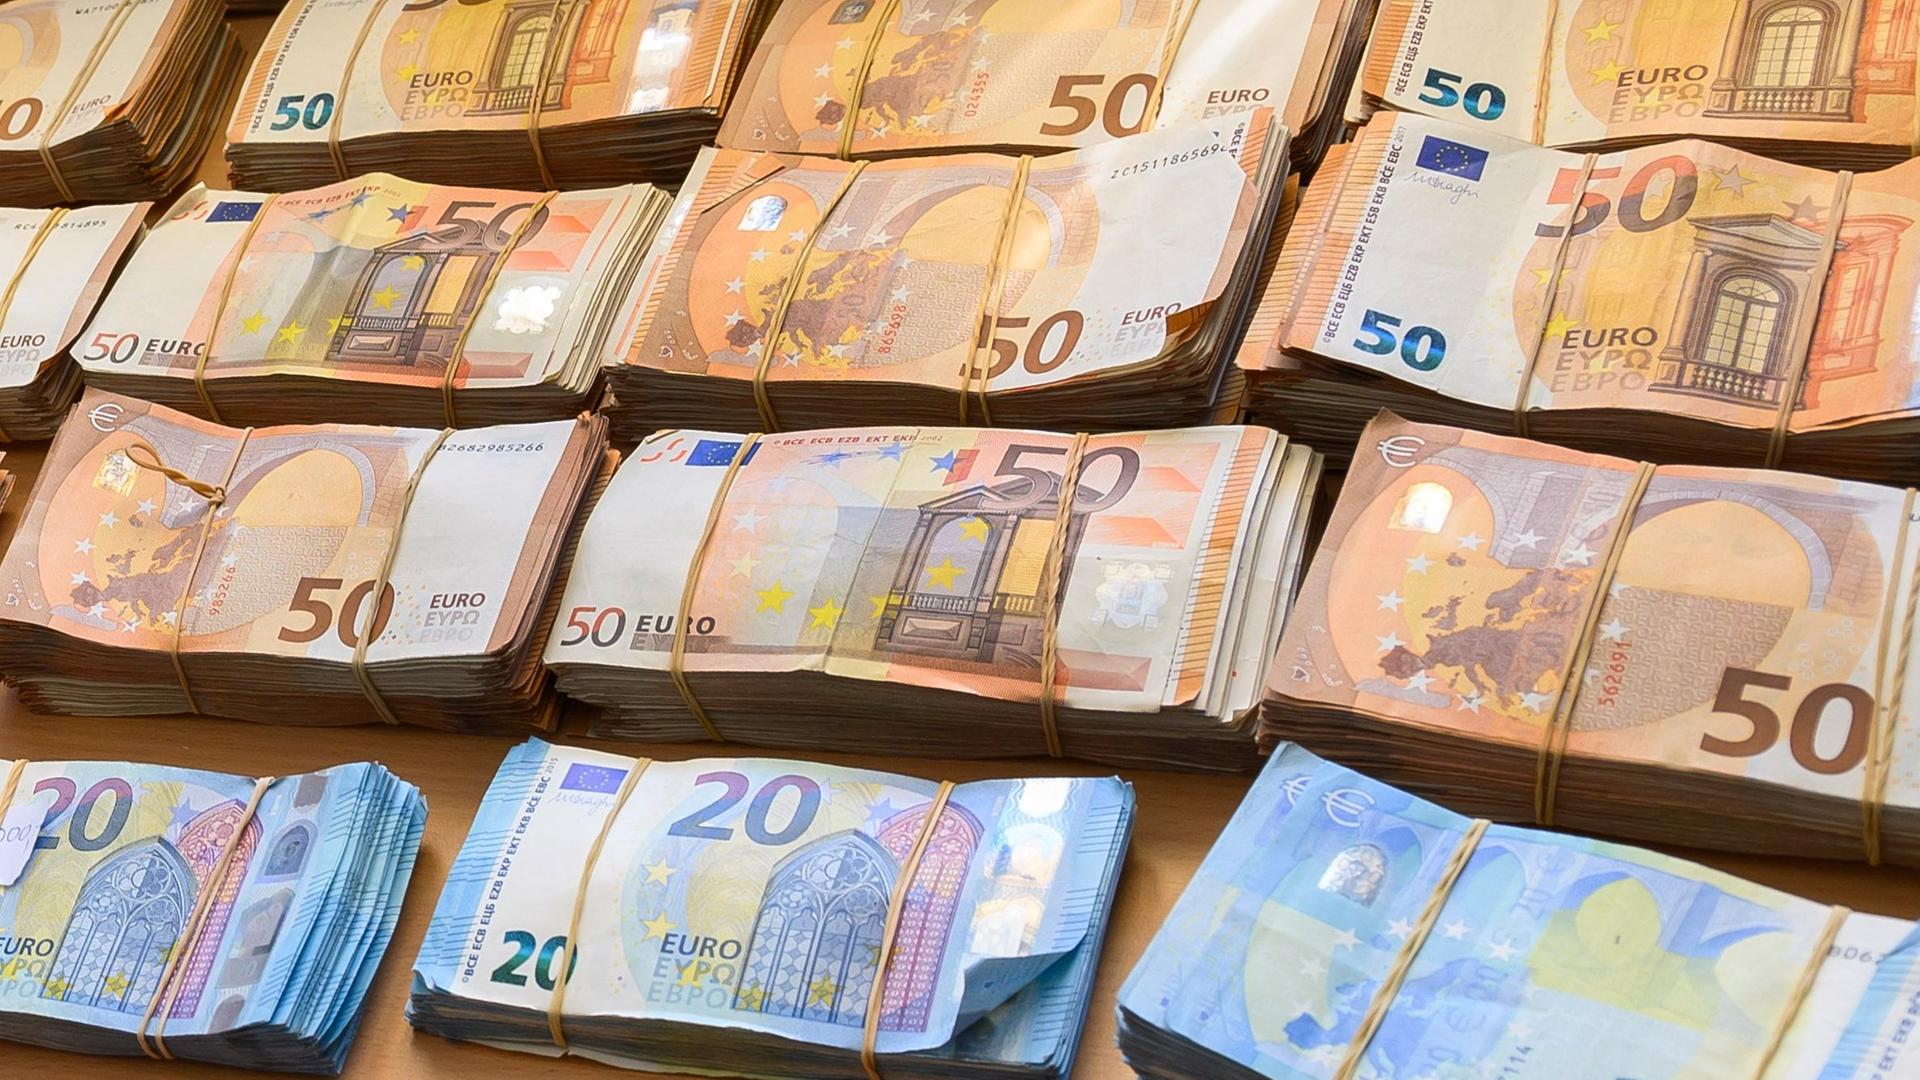 Das Foto zeigt mehrere Bündel mit Euro-Banknoten auf einem Tisch.